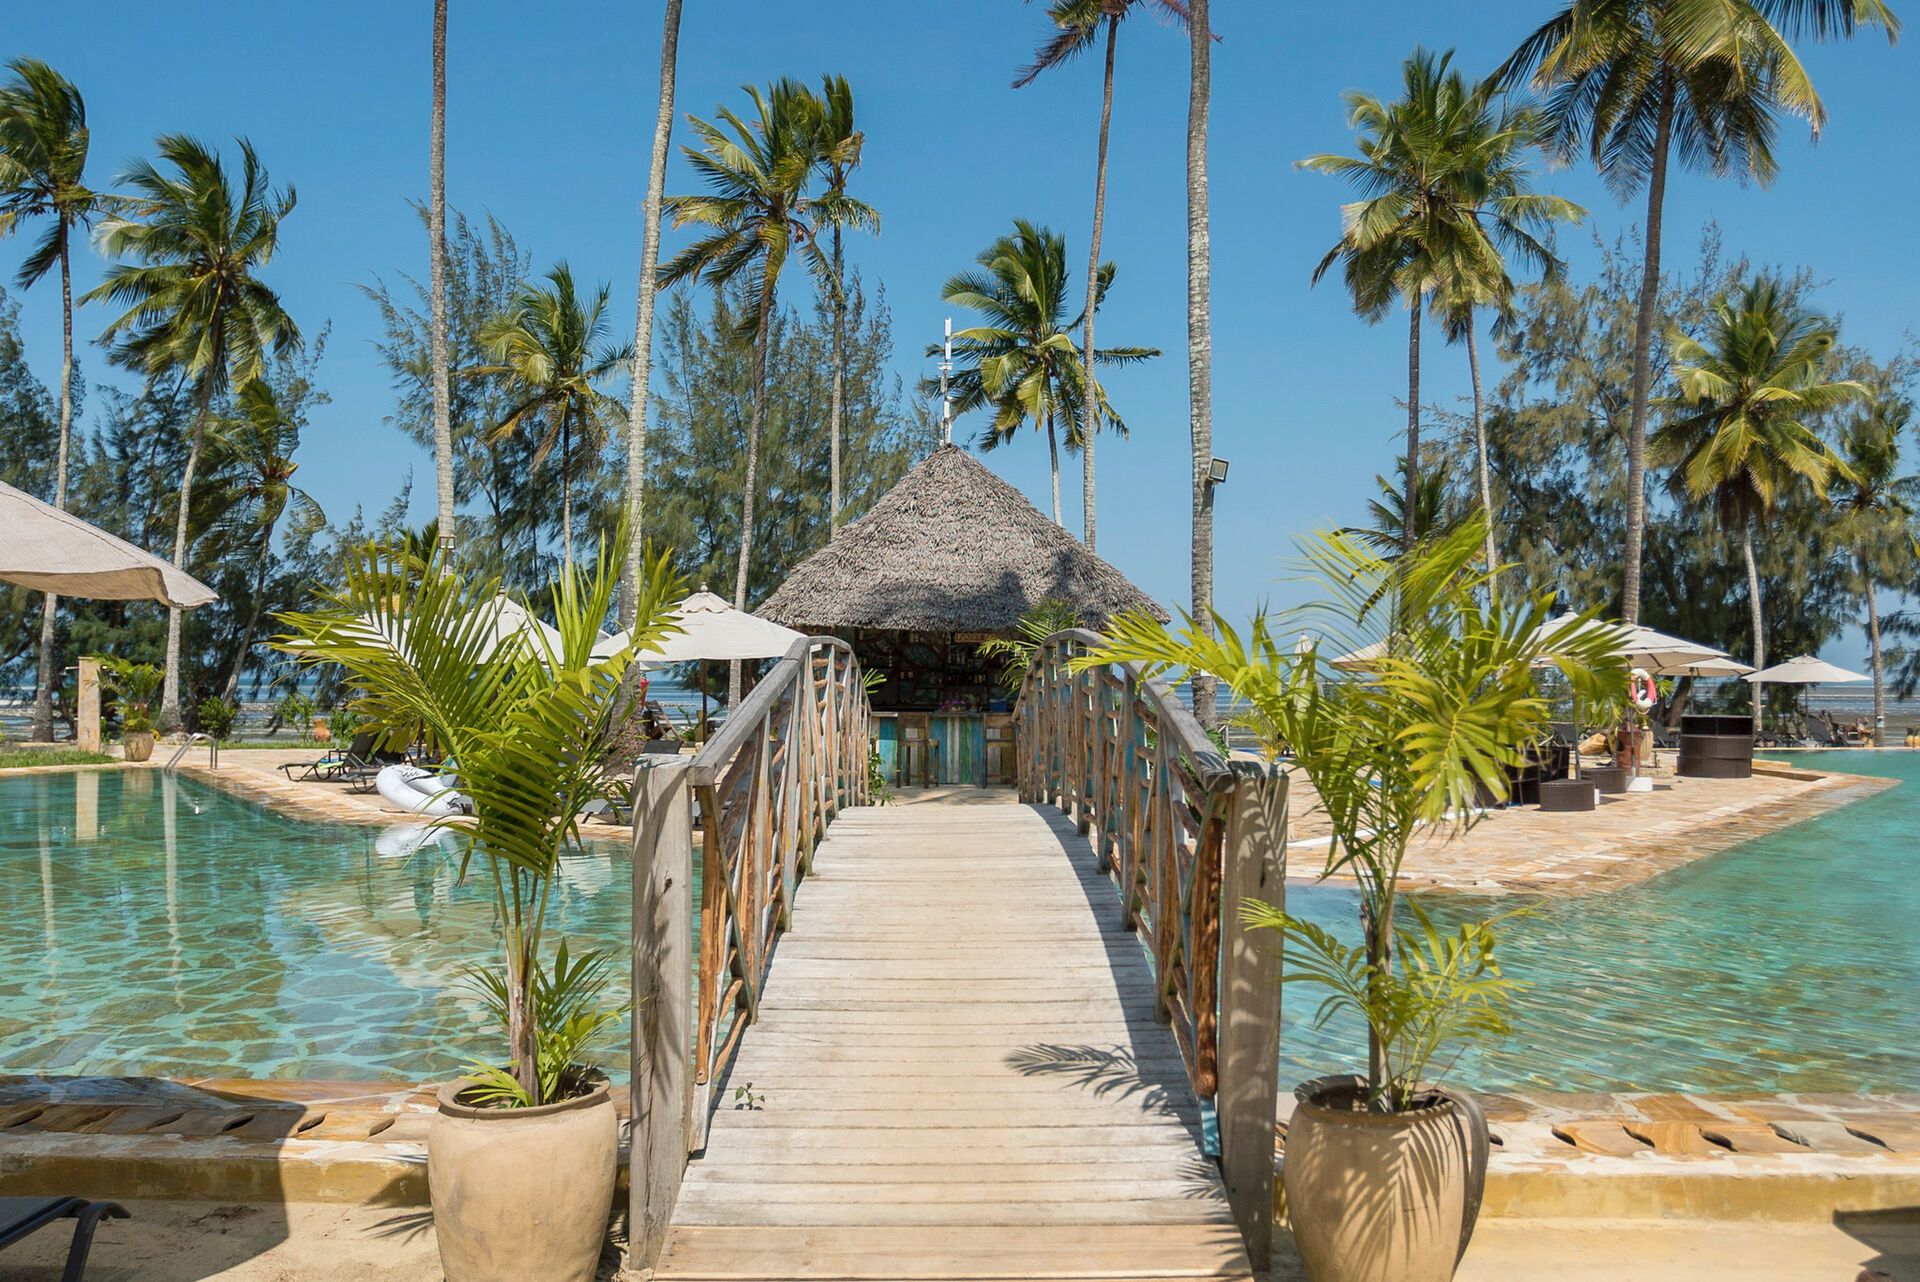 Tanzanie - Zanzibar - Hotel Zanzibar Bay Resort 4*